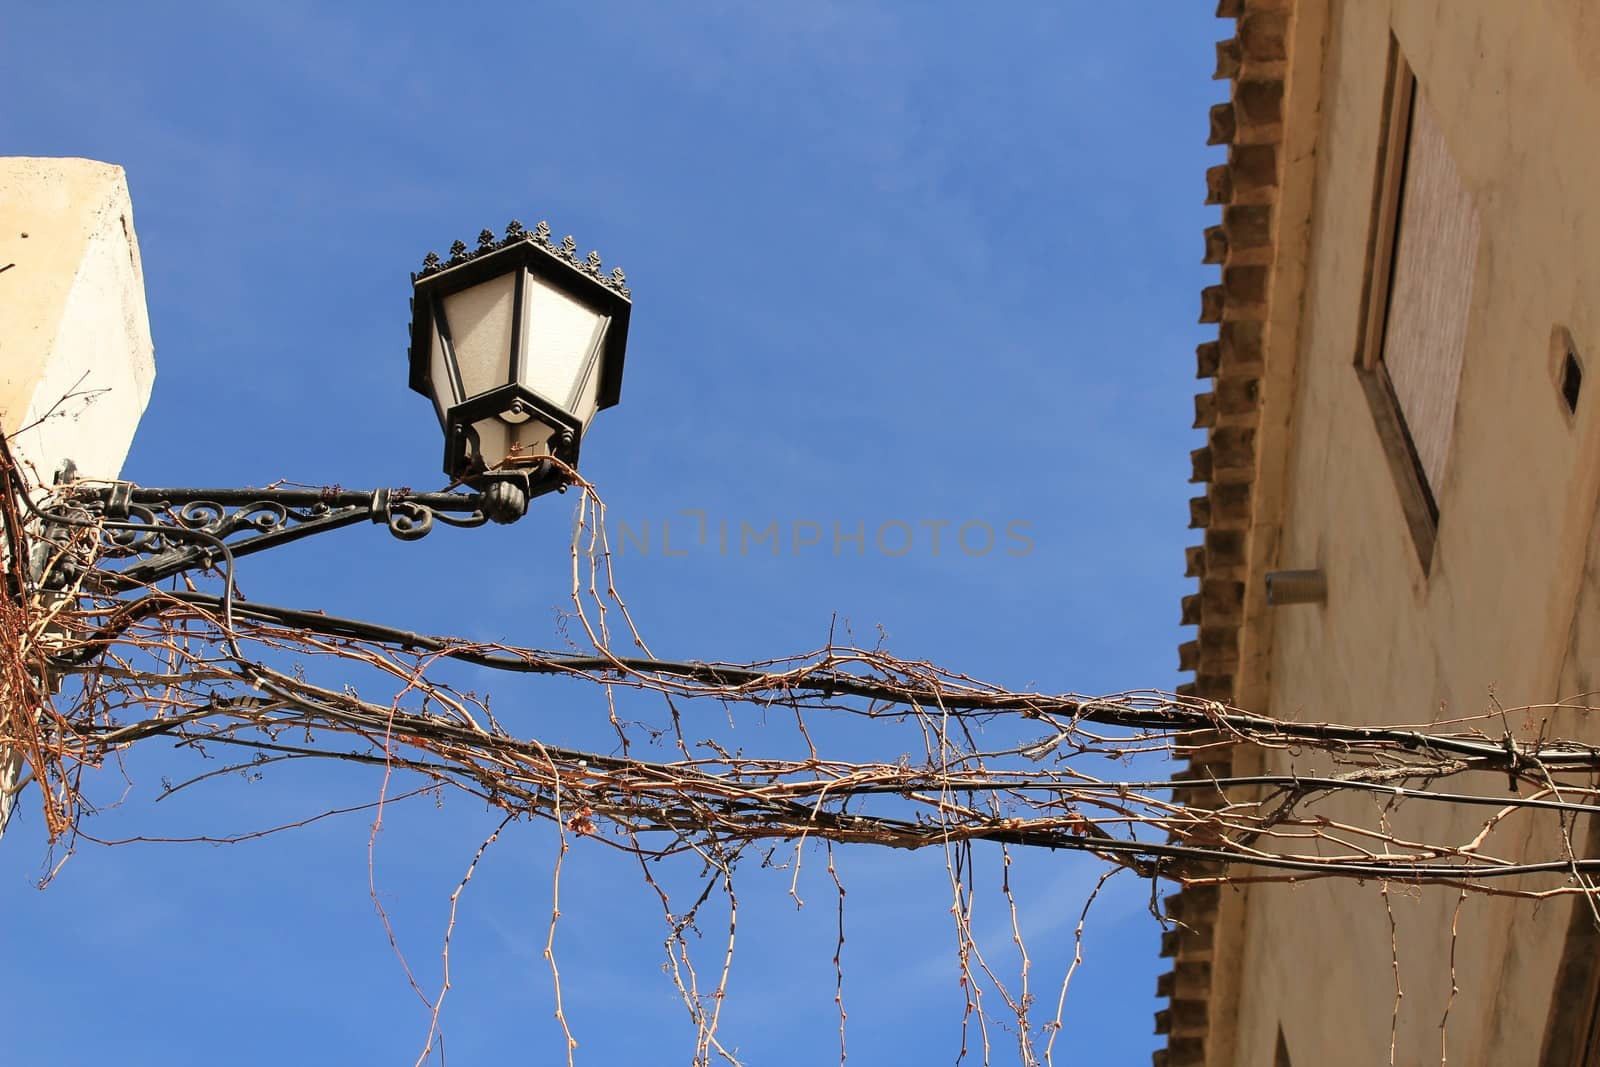 Streetlight and vine under blue sky in a Caravaca de la Cruz street, Murcia.